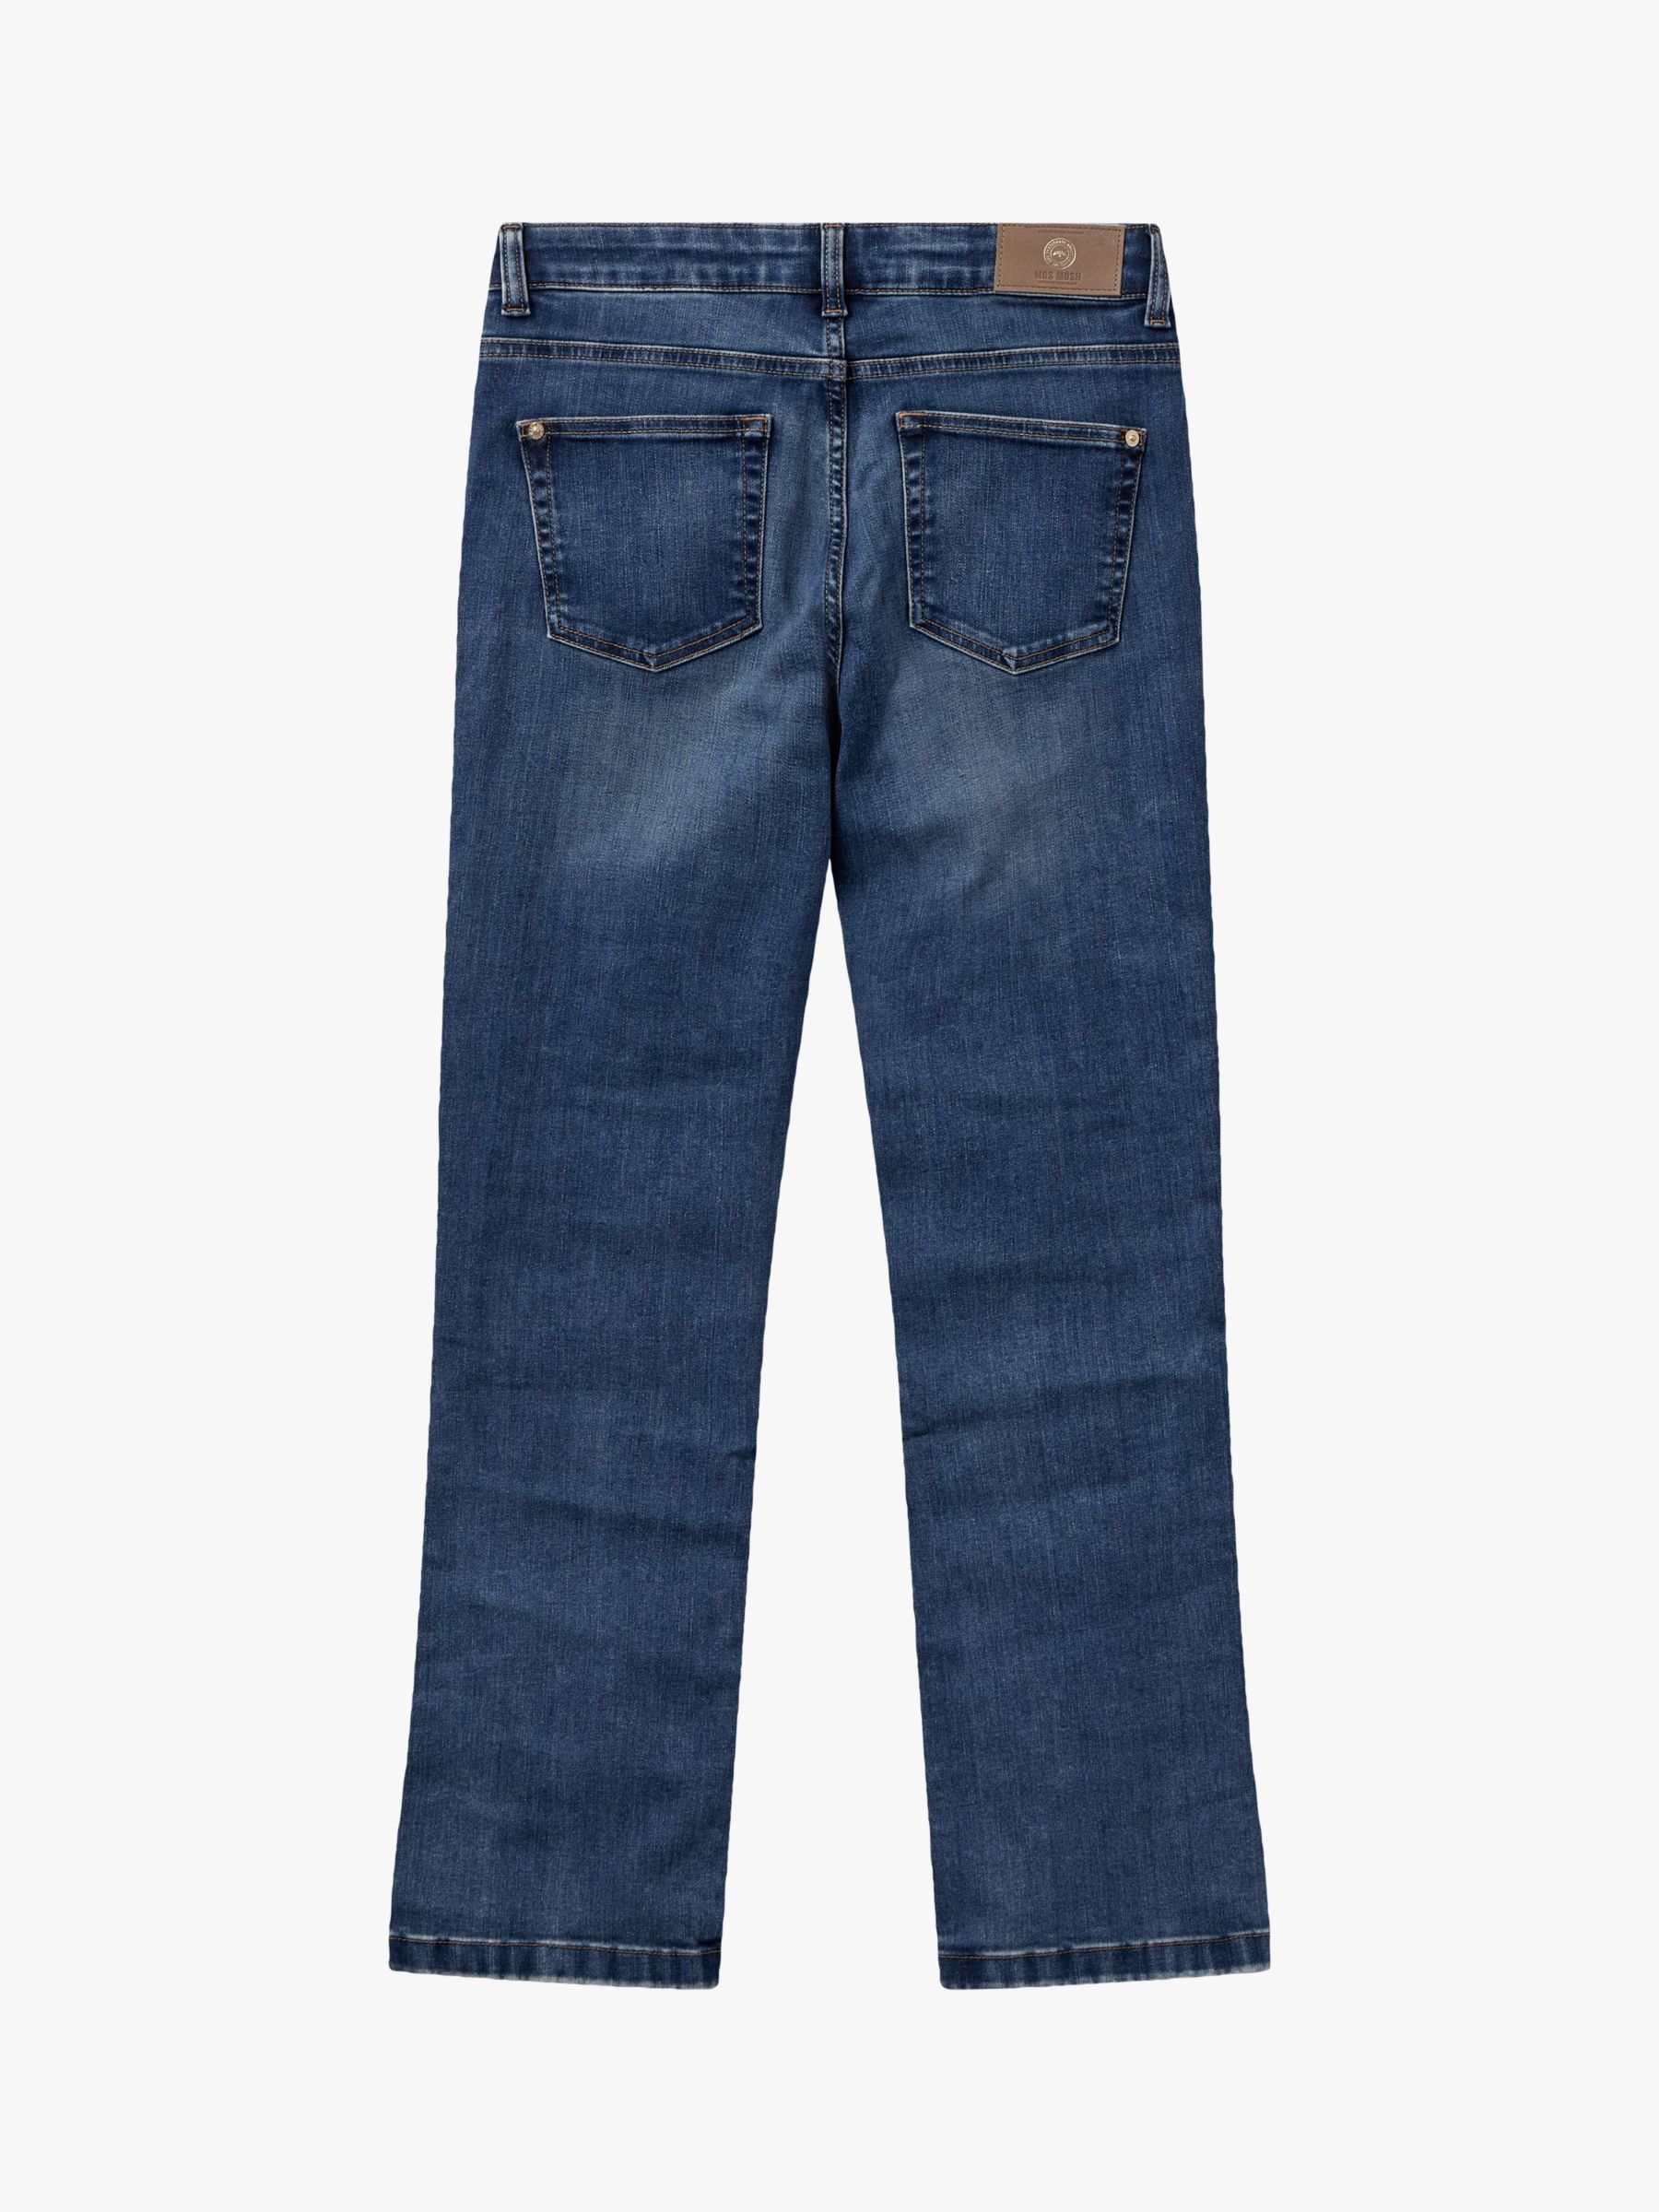 MOS MOSH Ashley Imera Slim Jeans, Blue, 33R